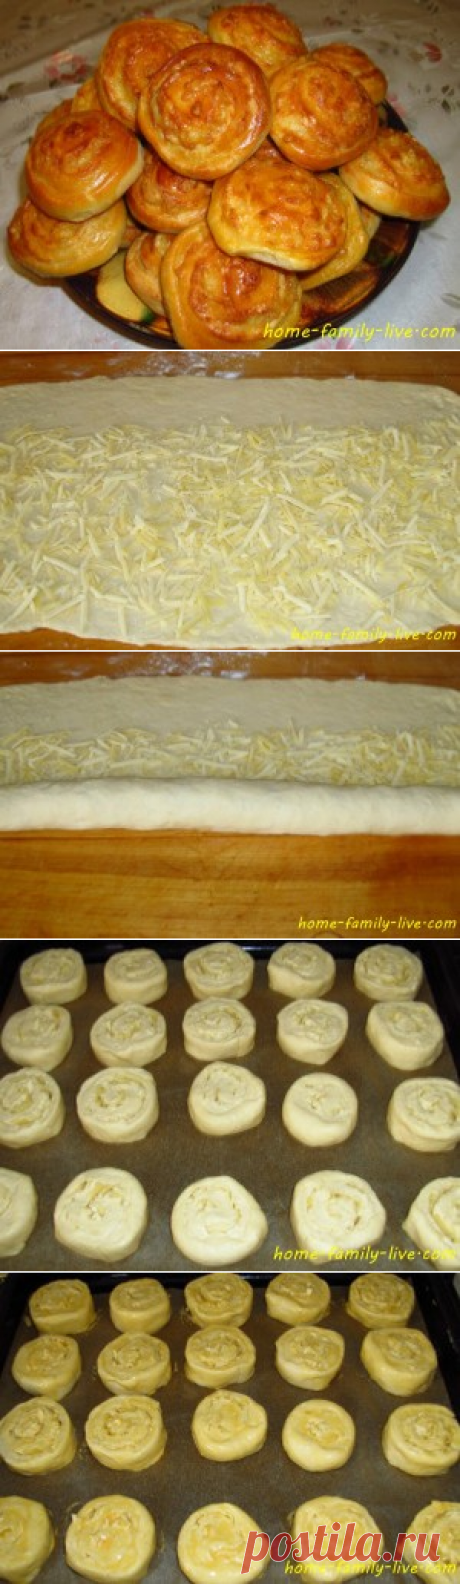 Сырные булочки - пошаговый рецепт с фотоКулинарные рецепты